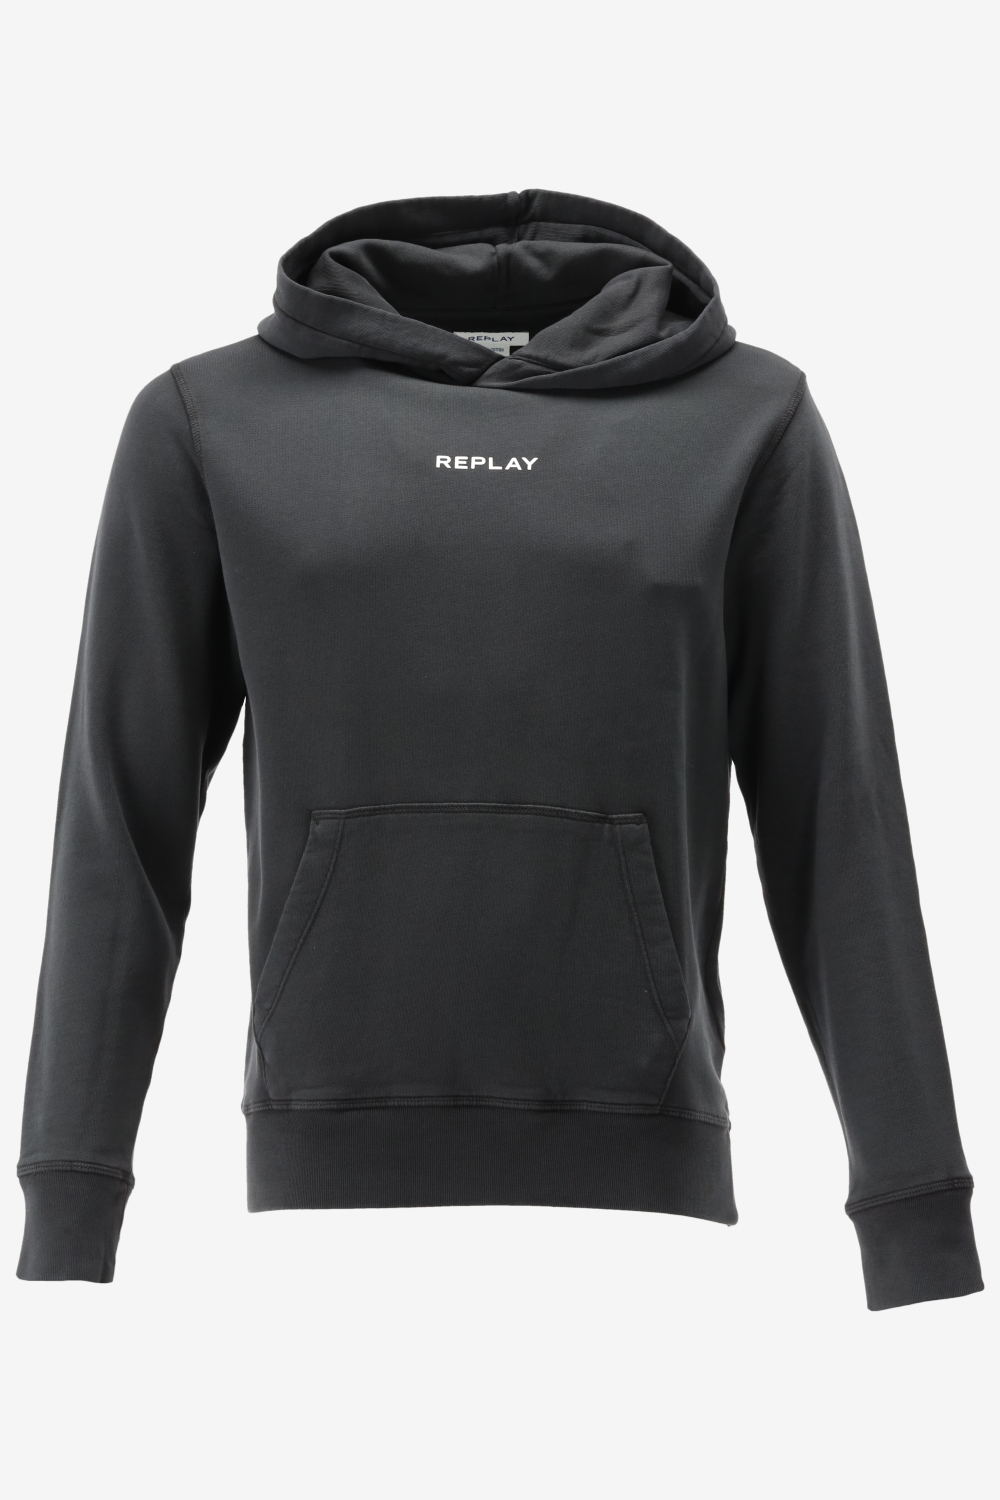 Replay hoodie maat XL